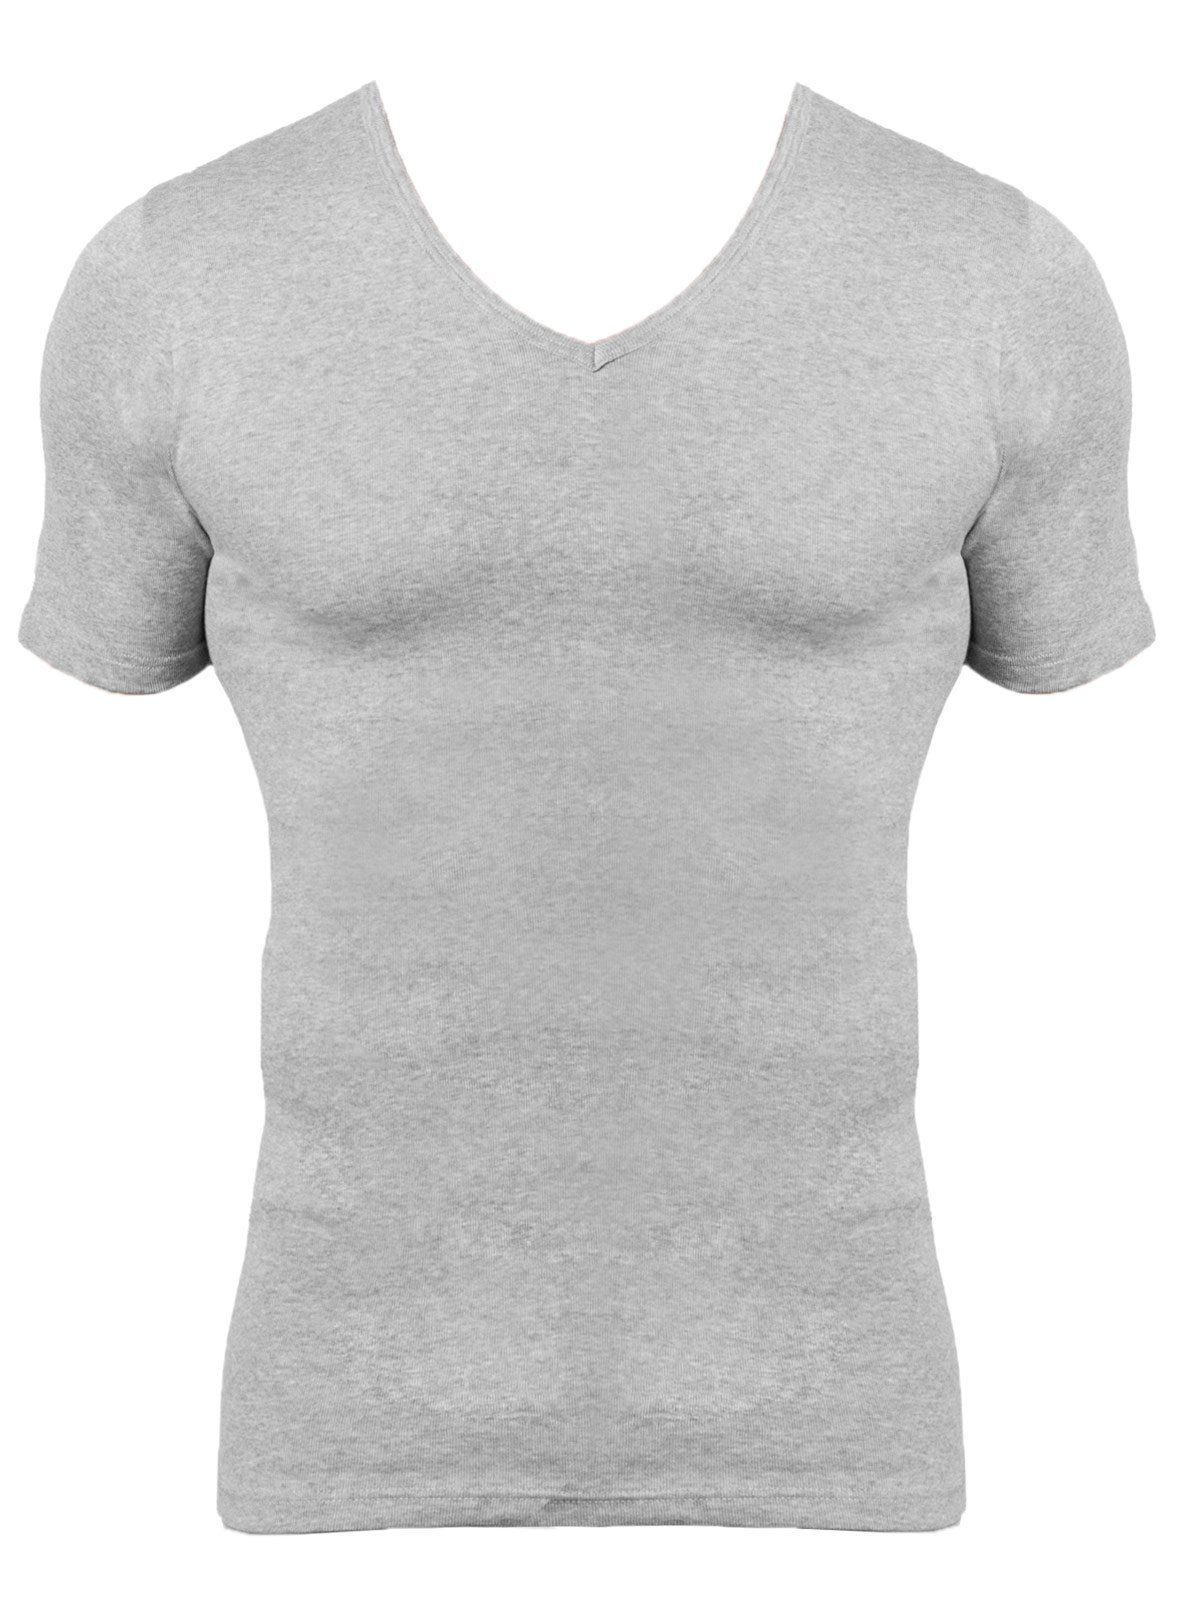 KUMPF (Packung, Herren 2er Unterziehshirt Cotton Bio 2-St) Pack Markenqualität hohe T-Shirt